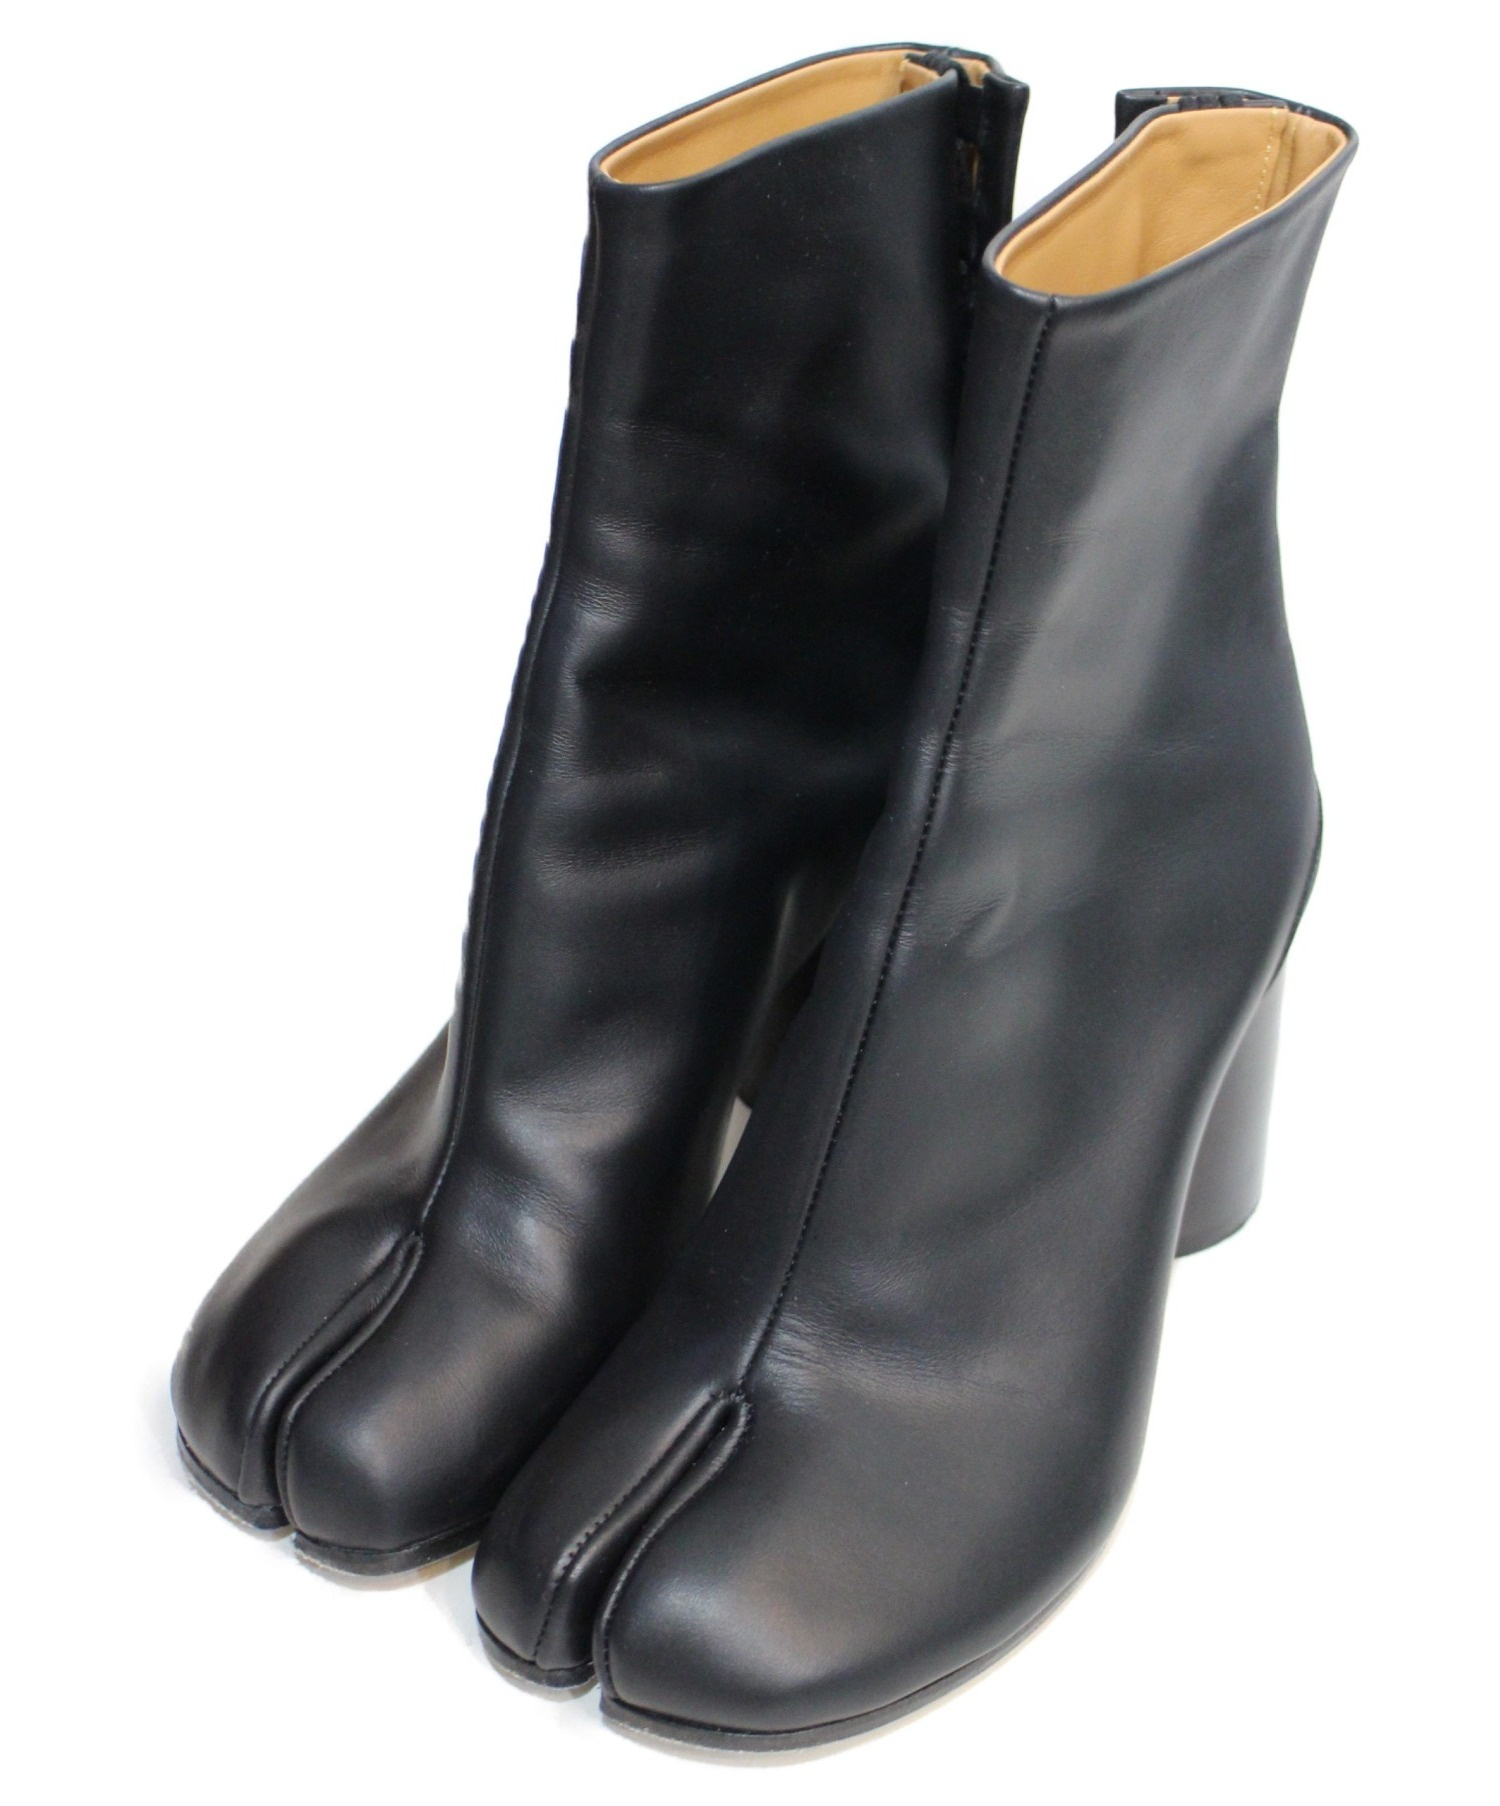 Maison Margiela (メゾンマルジェラ) 足袋ブーツ ブラック サイズ:37 S58WU0260｜ブランド古着の通販サイト